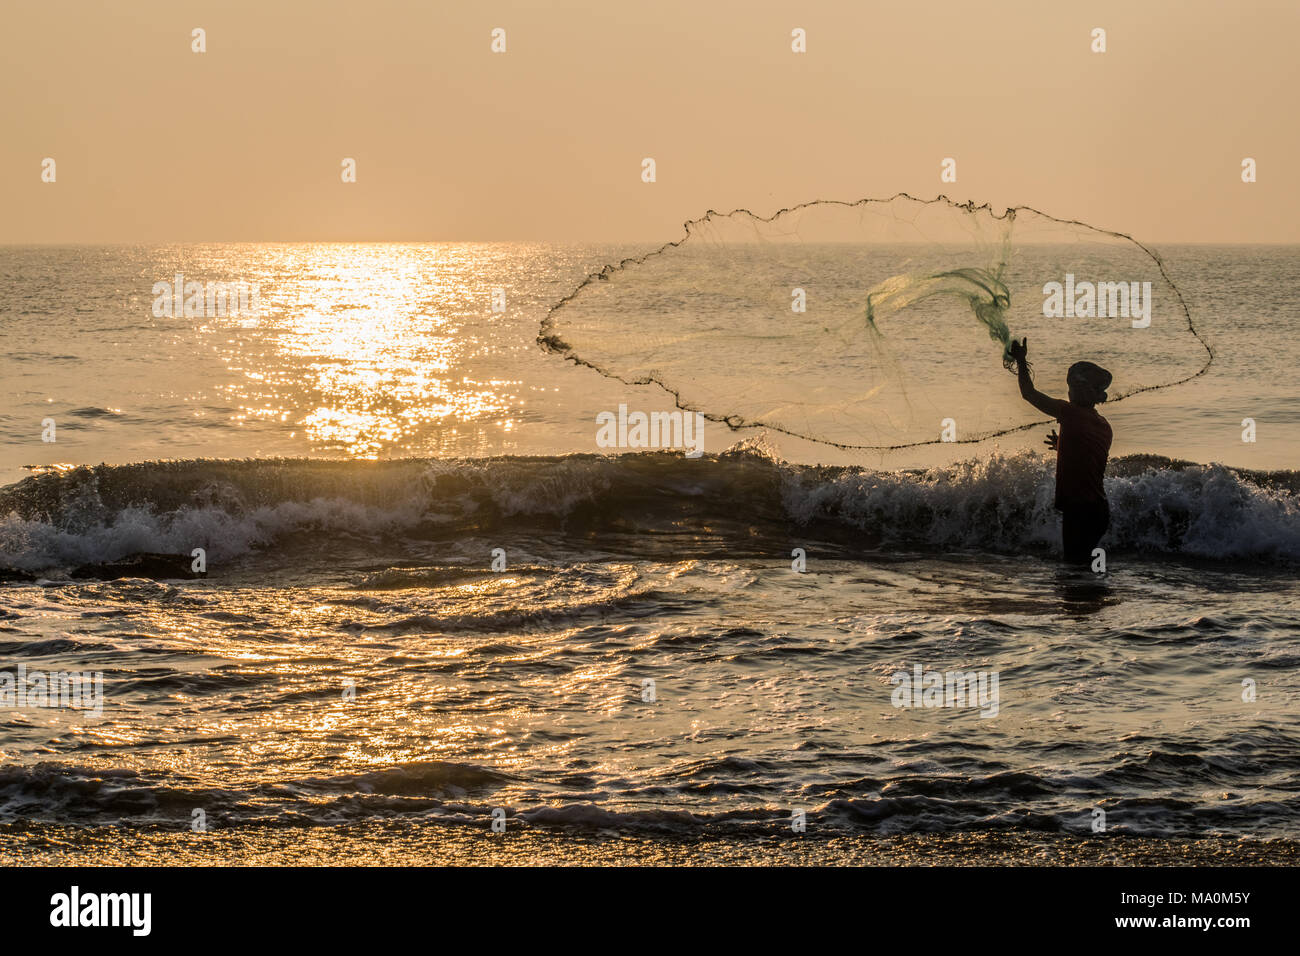 Der Charme der Fischerei ist, dass es sich um die Fortsetzung von dem, was schwer ist, aber erreichbar, eine unaufhörliche Reihe von Gelegenheiten für Hoffnung. Stockfoto